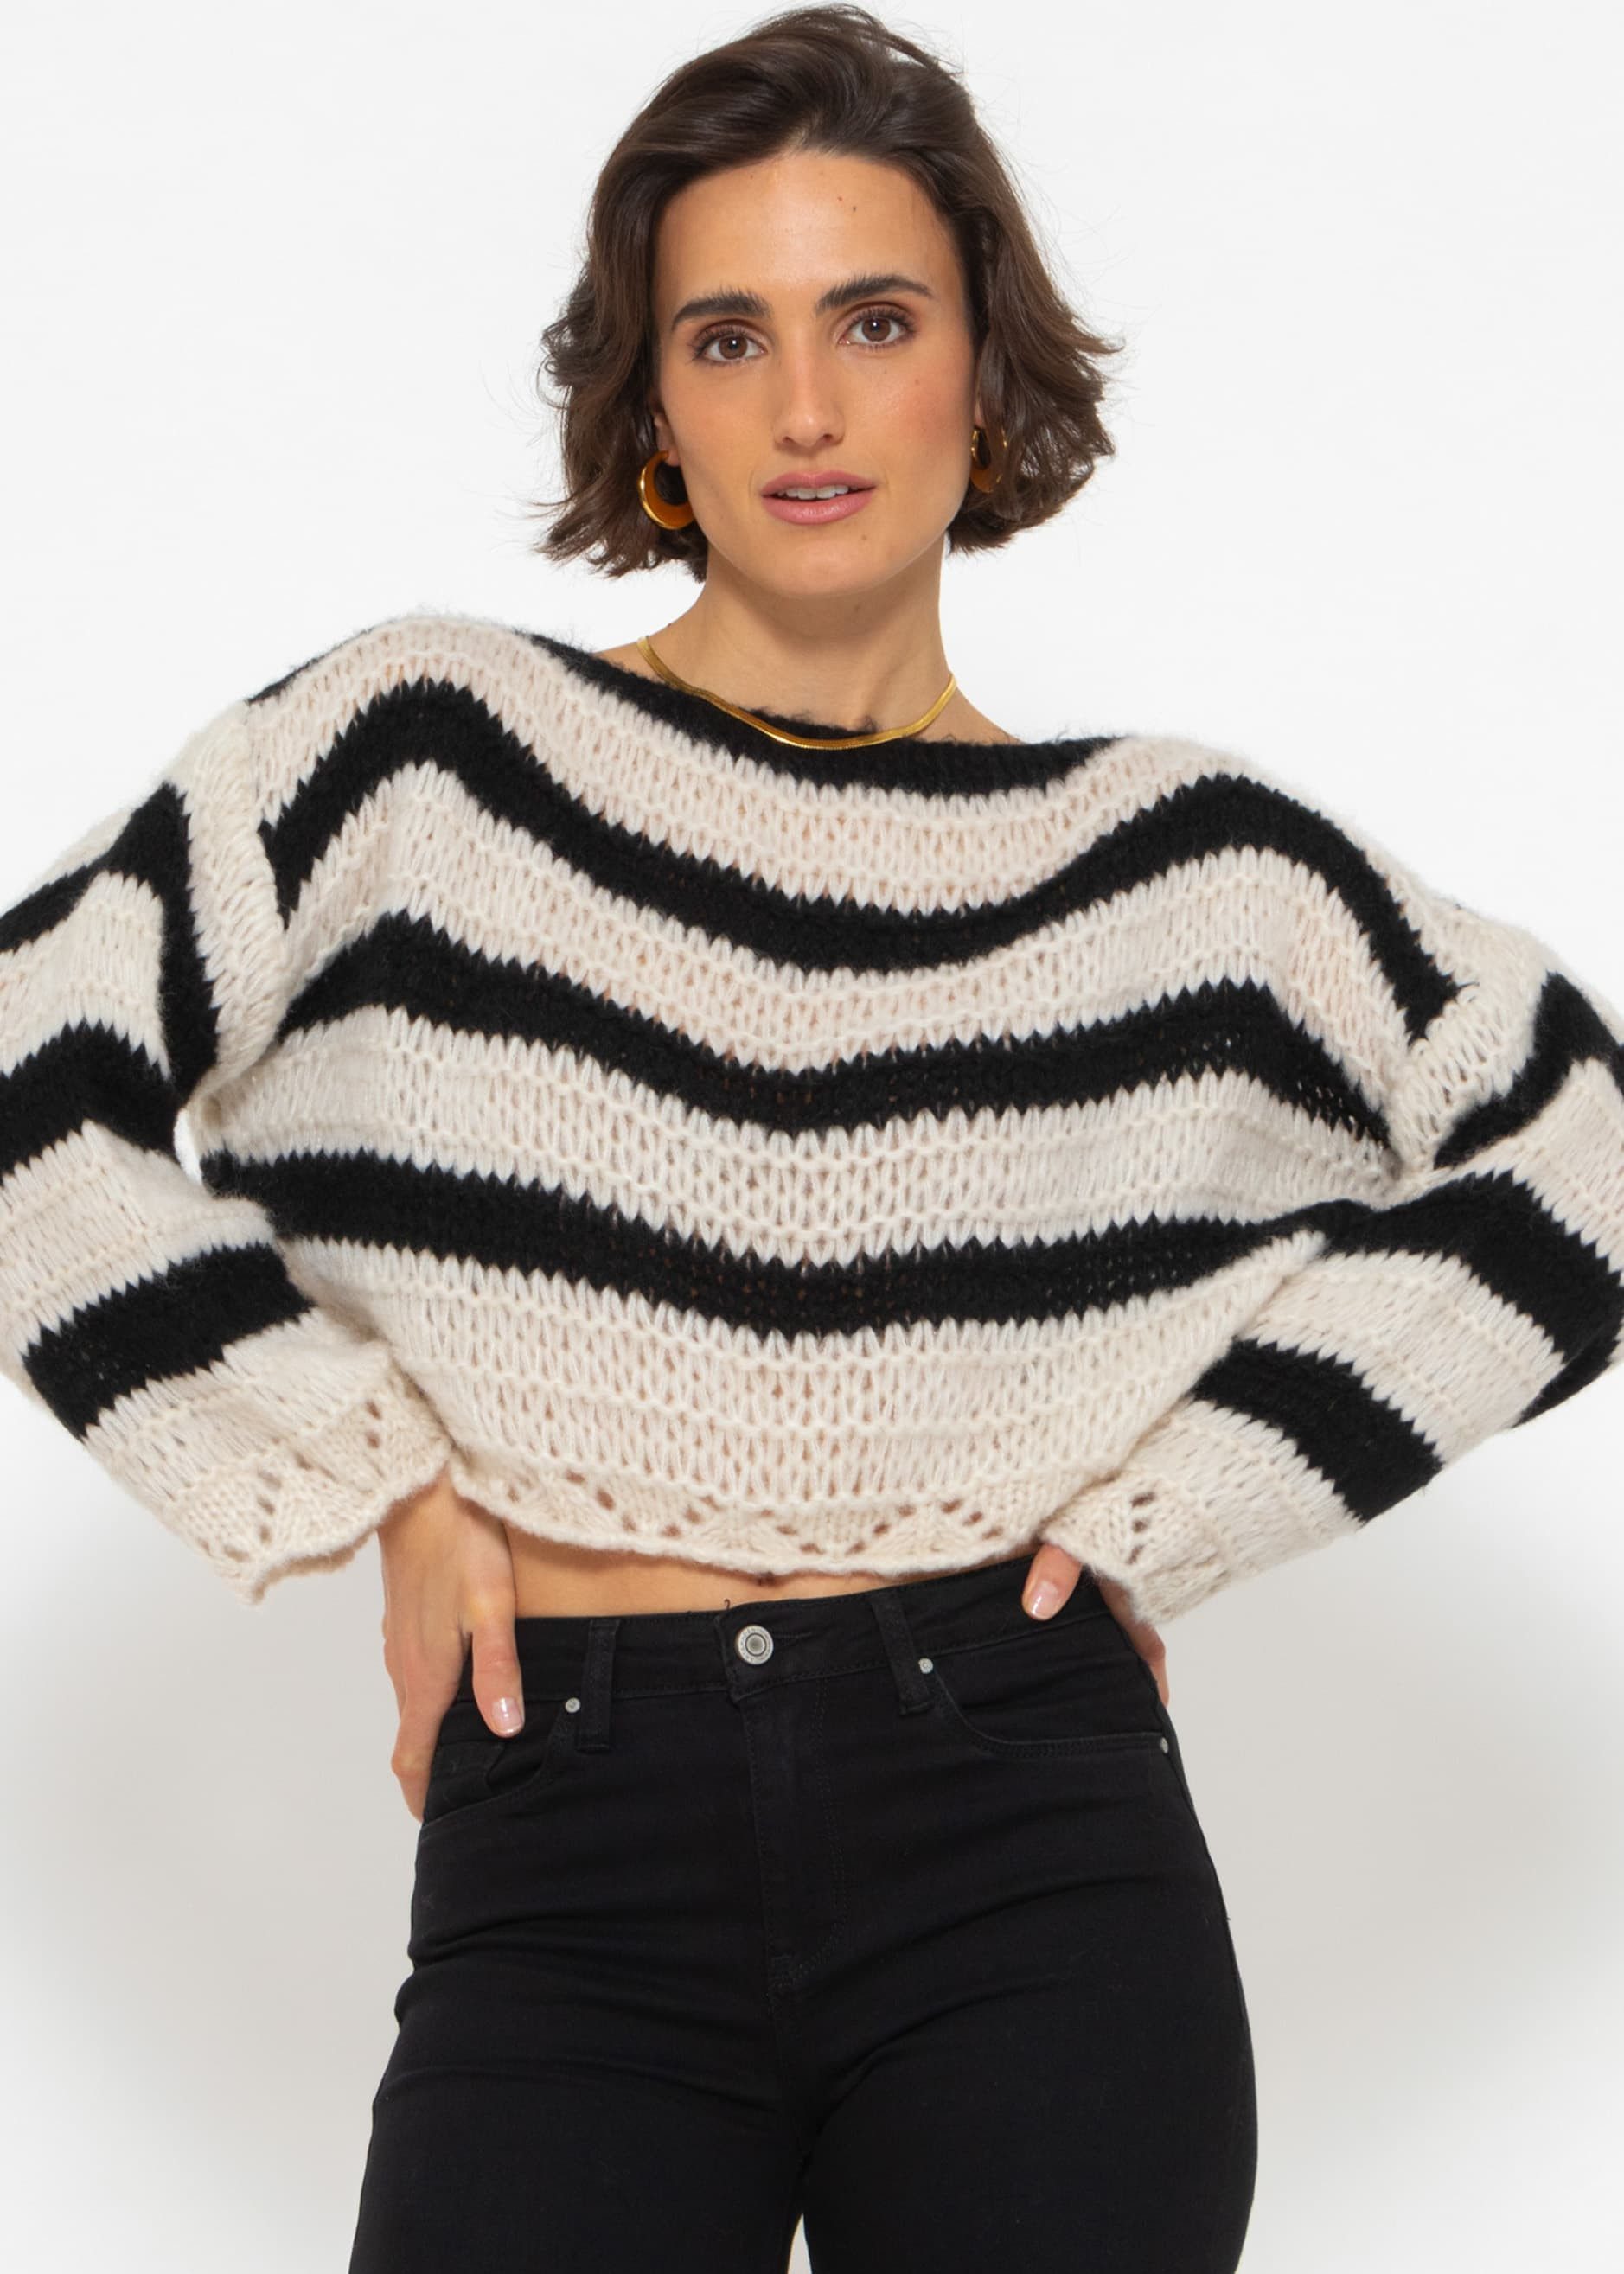 SASSYCLASSY Strickpullover Oversize Pullover mit Streifen Grobstrickpullover mit weiten Ärmeln und Ajour-Abschlüssen